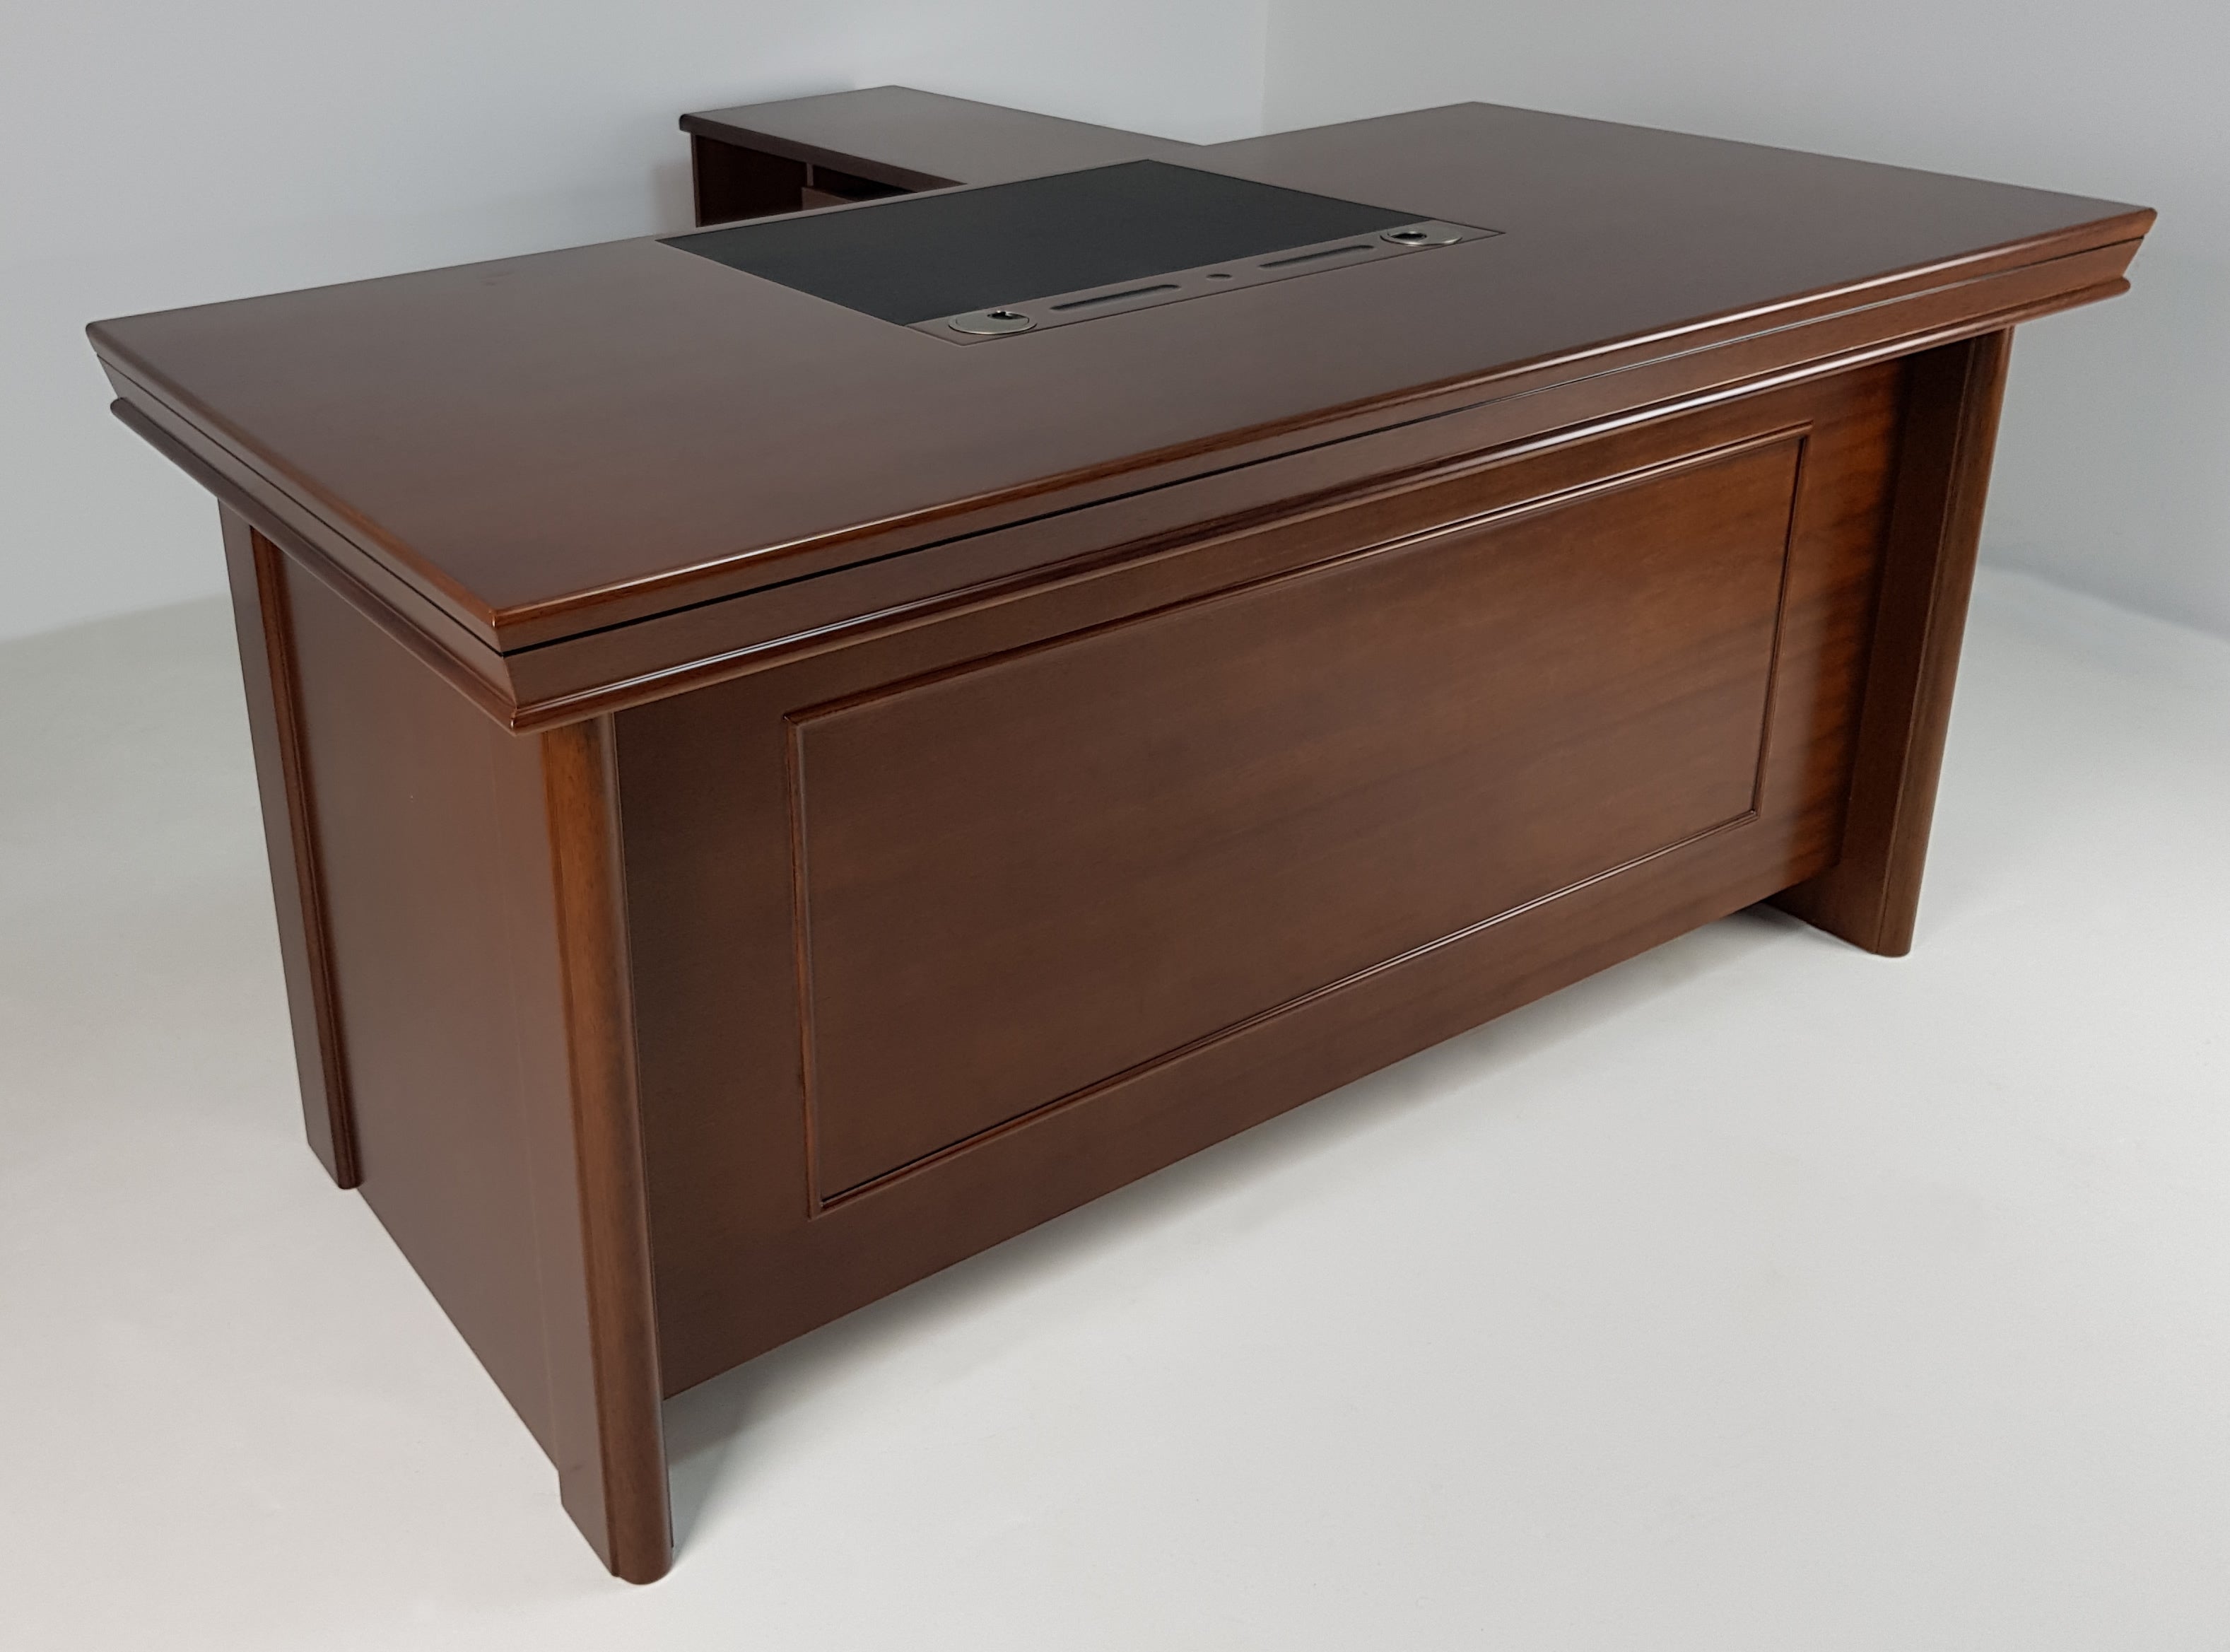 Light Walnut Real Wood Veneer Executive Office Desk -1830-WNT UK